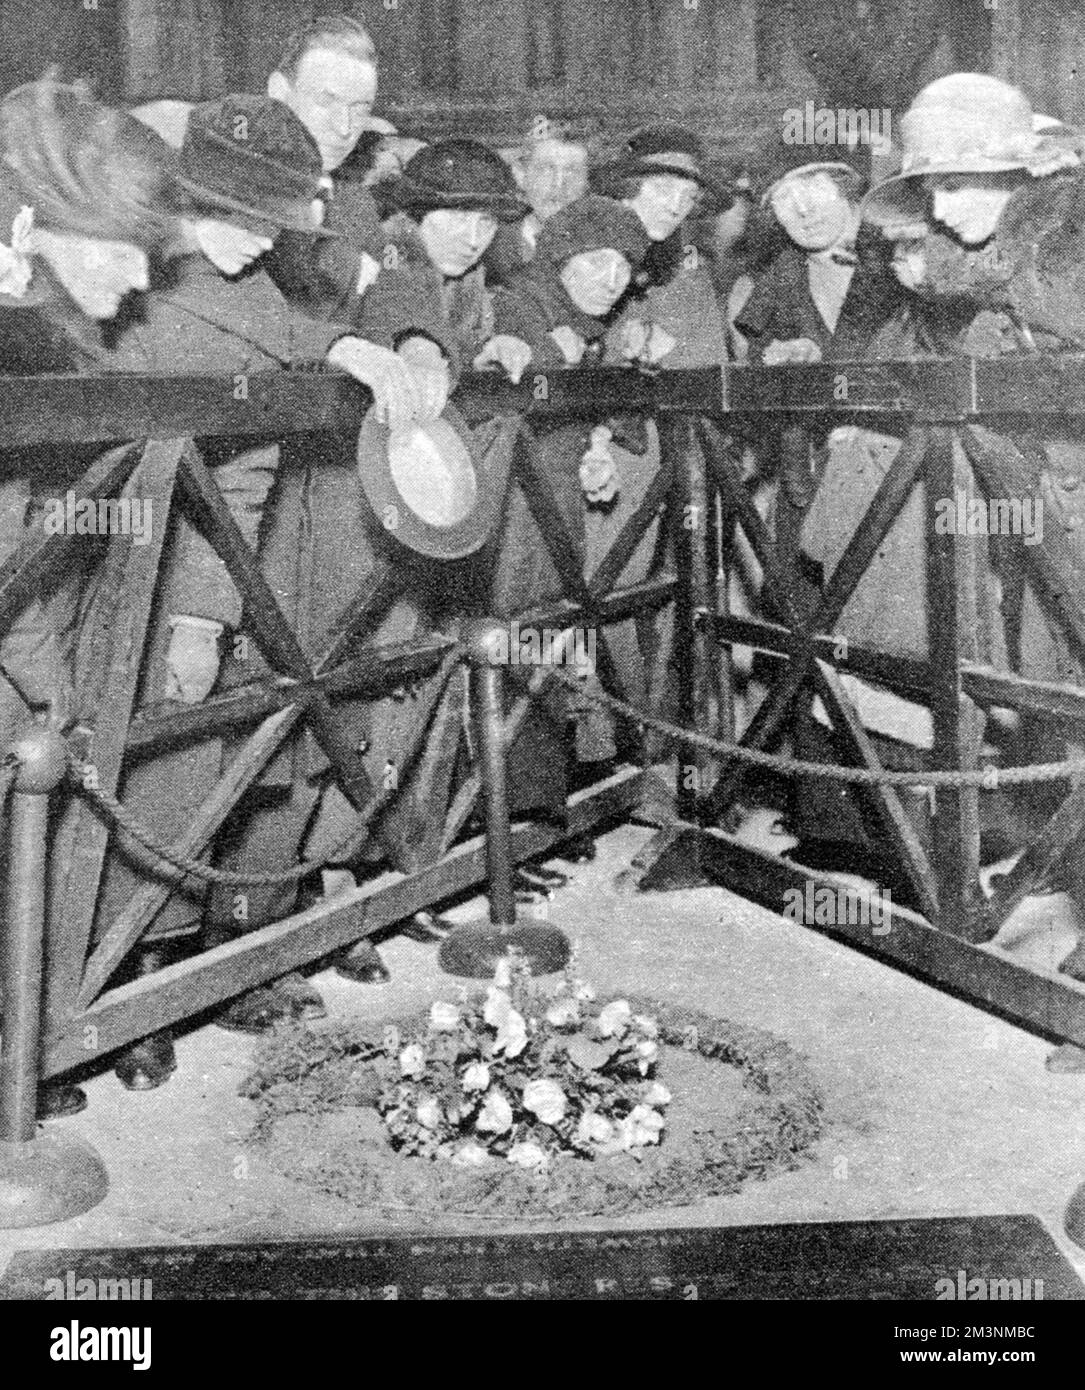 Die Herzogin von York zollt dem unbekannten Soldaten ihren überlegten Hochzeitstag: Ihr Strauß aus Rosen und Heidekraut auf dem Grab in Westminster Abbey. Datum: Mai 1923 Stockfoto